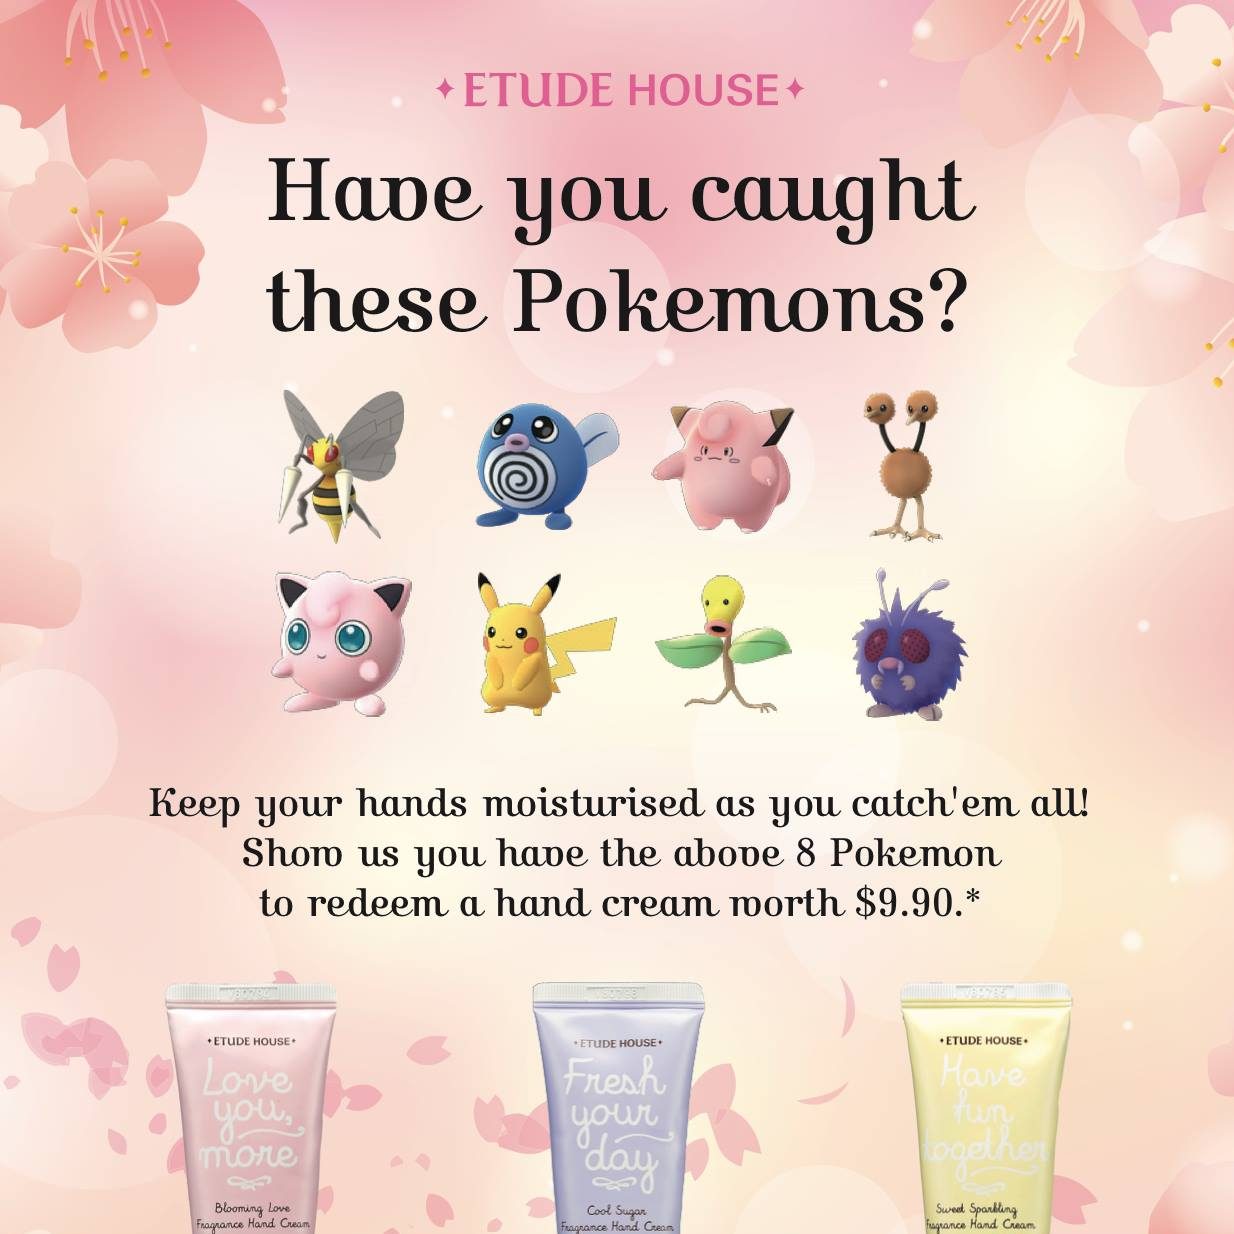 Etude House Singapore Pokemon GO Promotion While Stocks Last